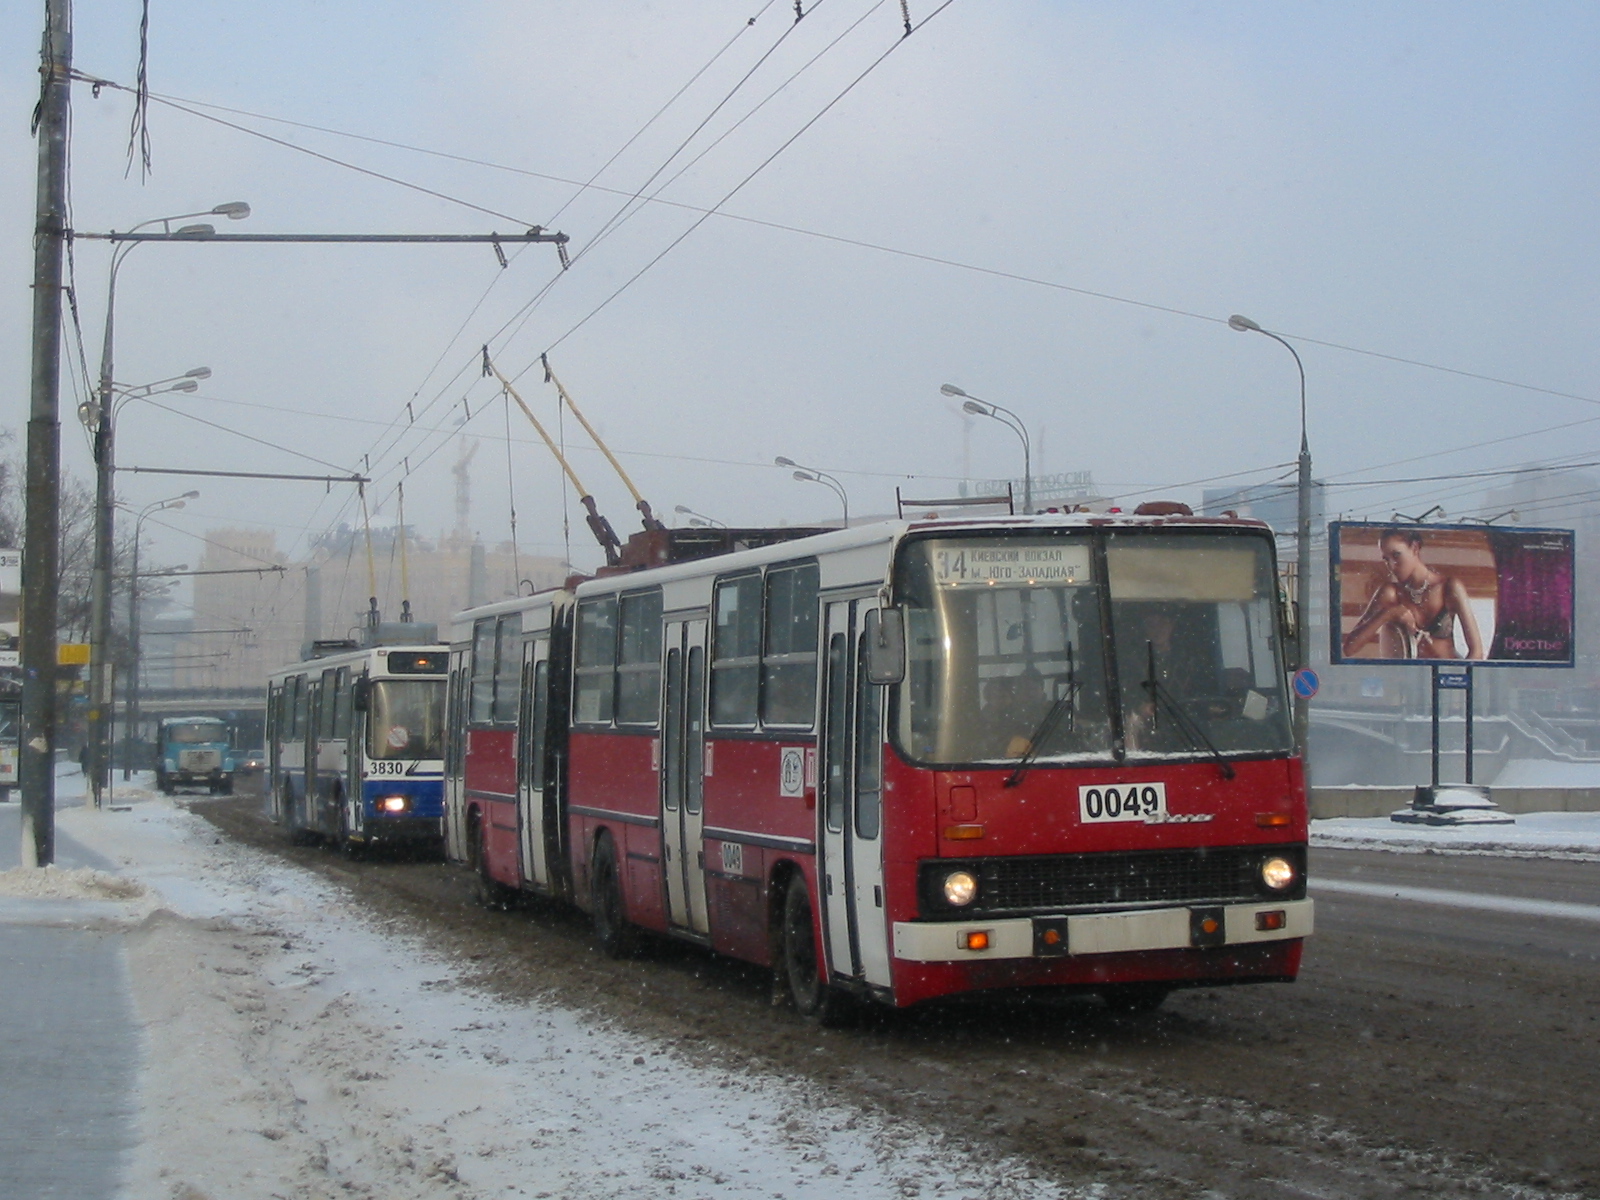 Троллейбус Ikarus-280T 0049, единственный в Москве полностью венгерской постройки